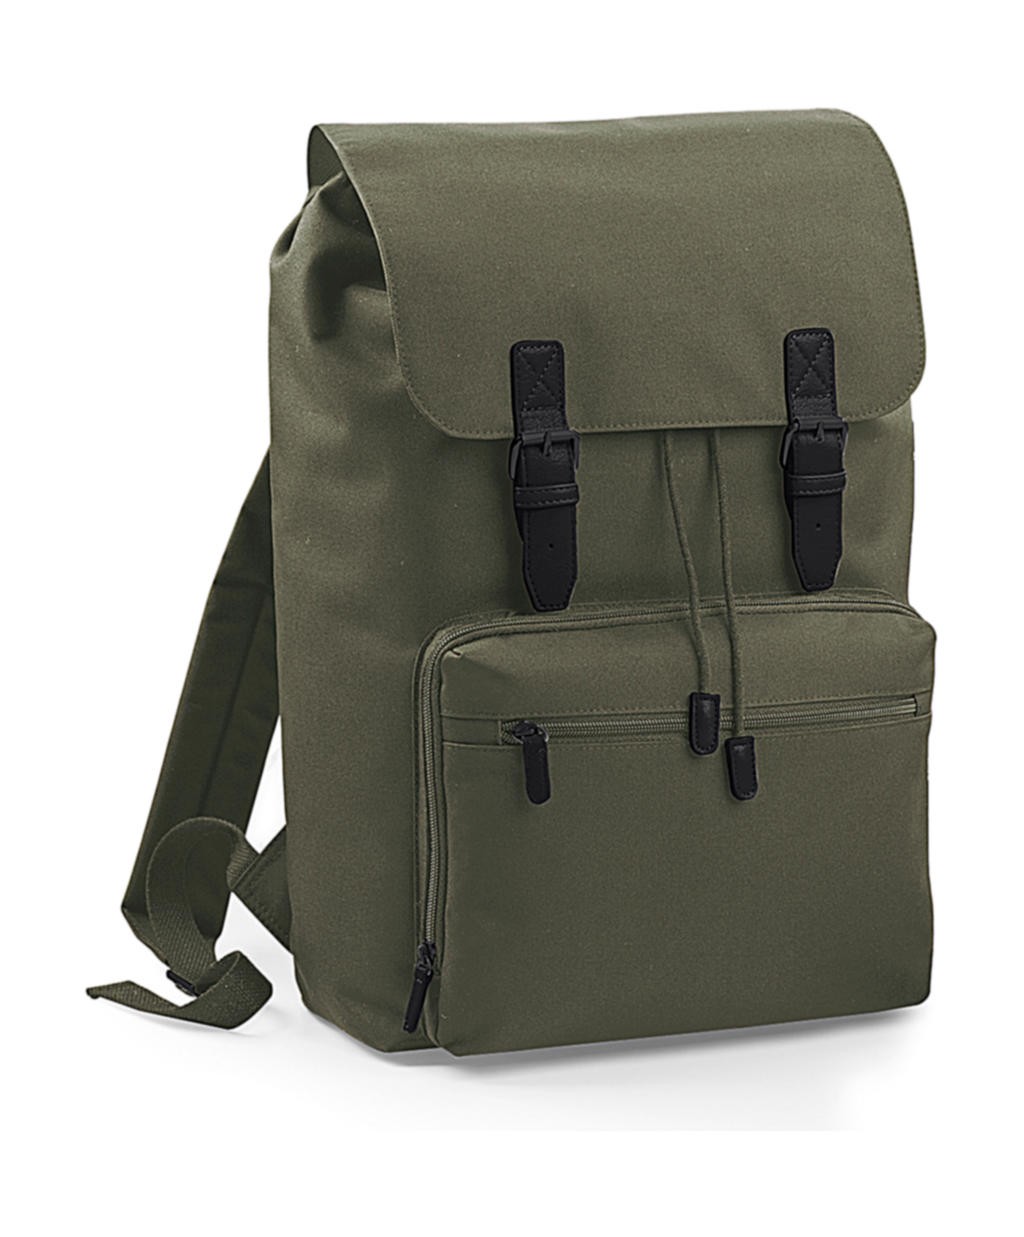  Vintage Laptop Backpack in Farbe Olive Green/Black